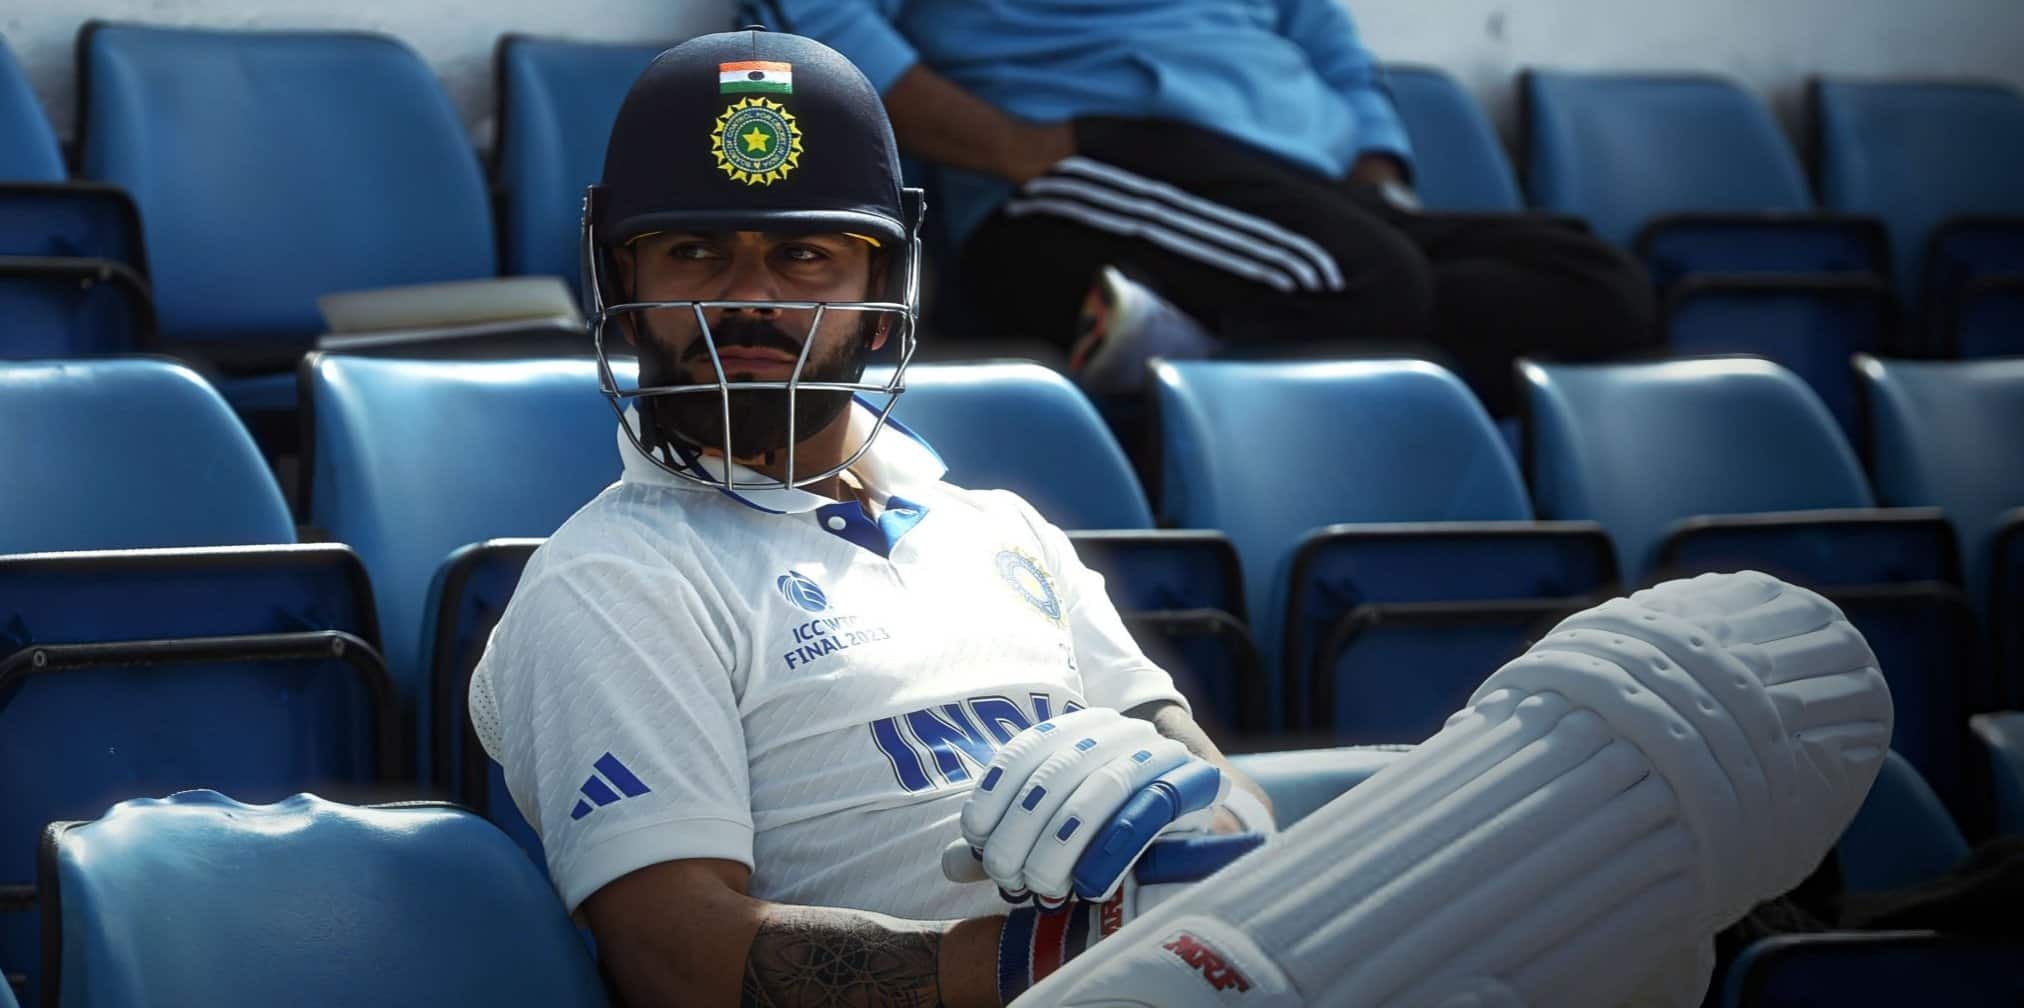 'BCCI was not prepared For Virat Kohli Leaving The Test captaincy' - Sourav Ganguly